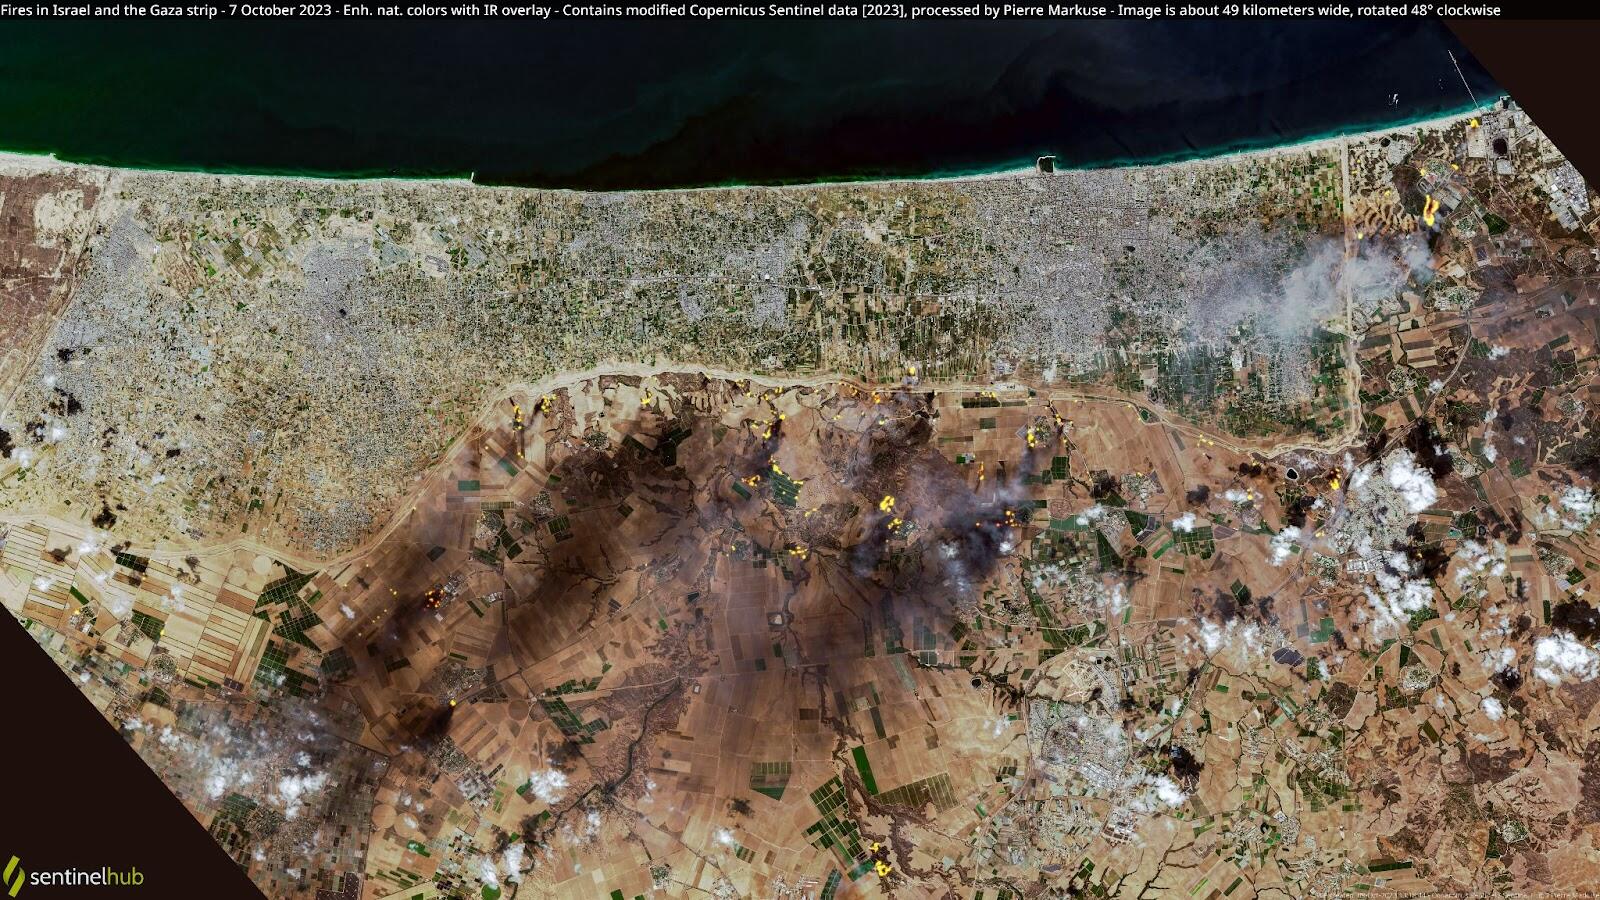 Imagem de satélite mostra incêndios na Faixa de Gaza após ataques no dia 7 de outubro